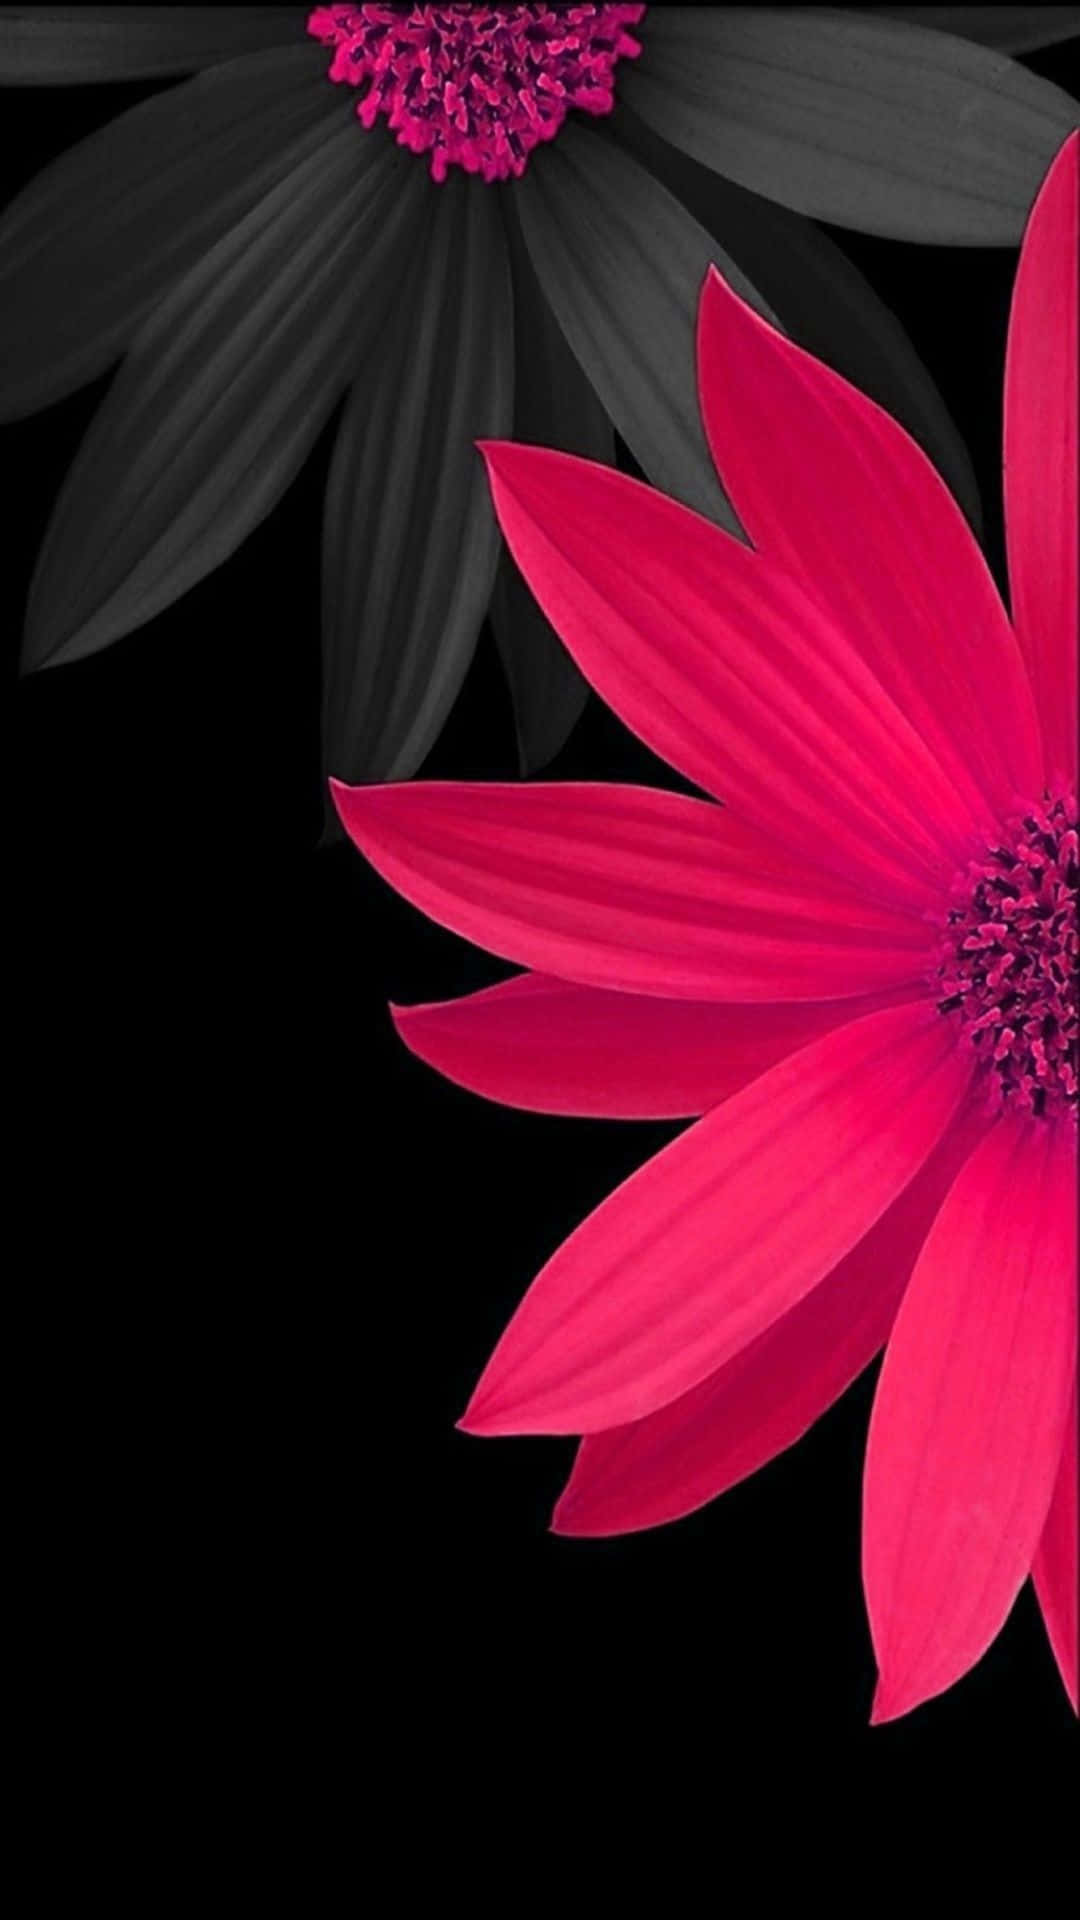 Daisyblumen In Schwarz Und Pink Für Das Iphone Wallpaper